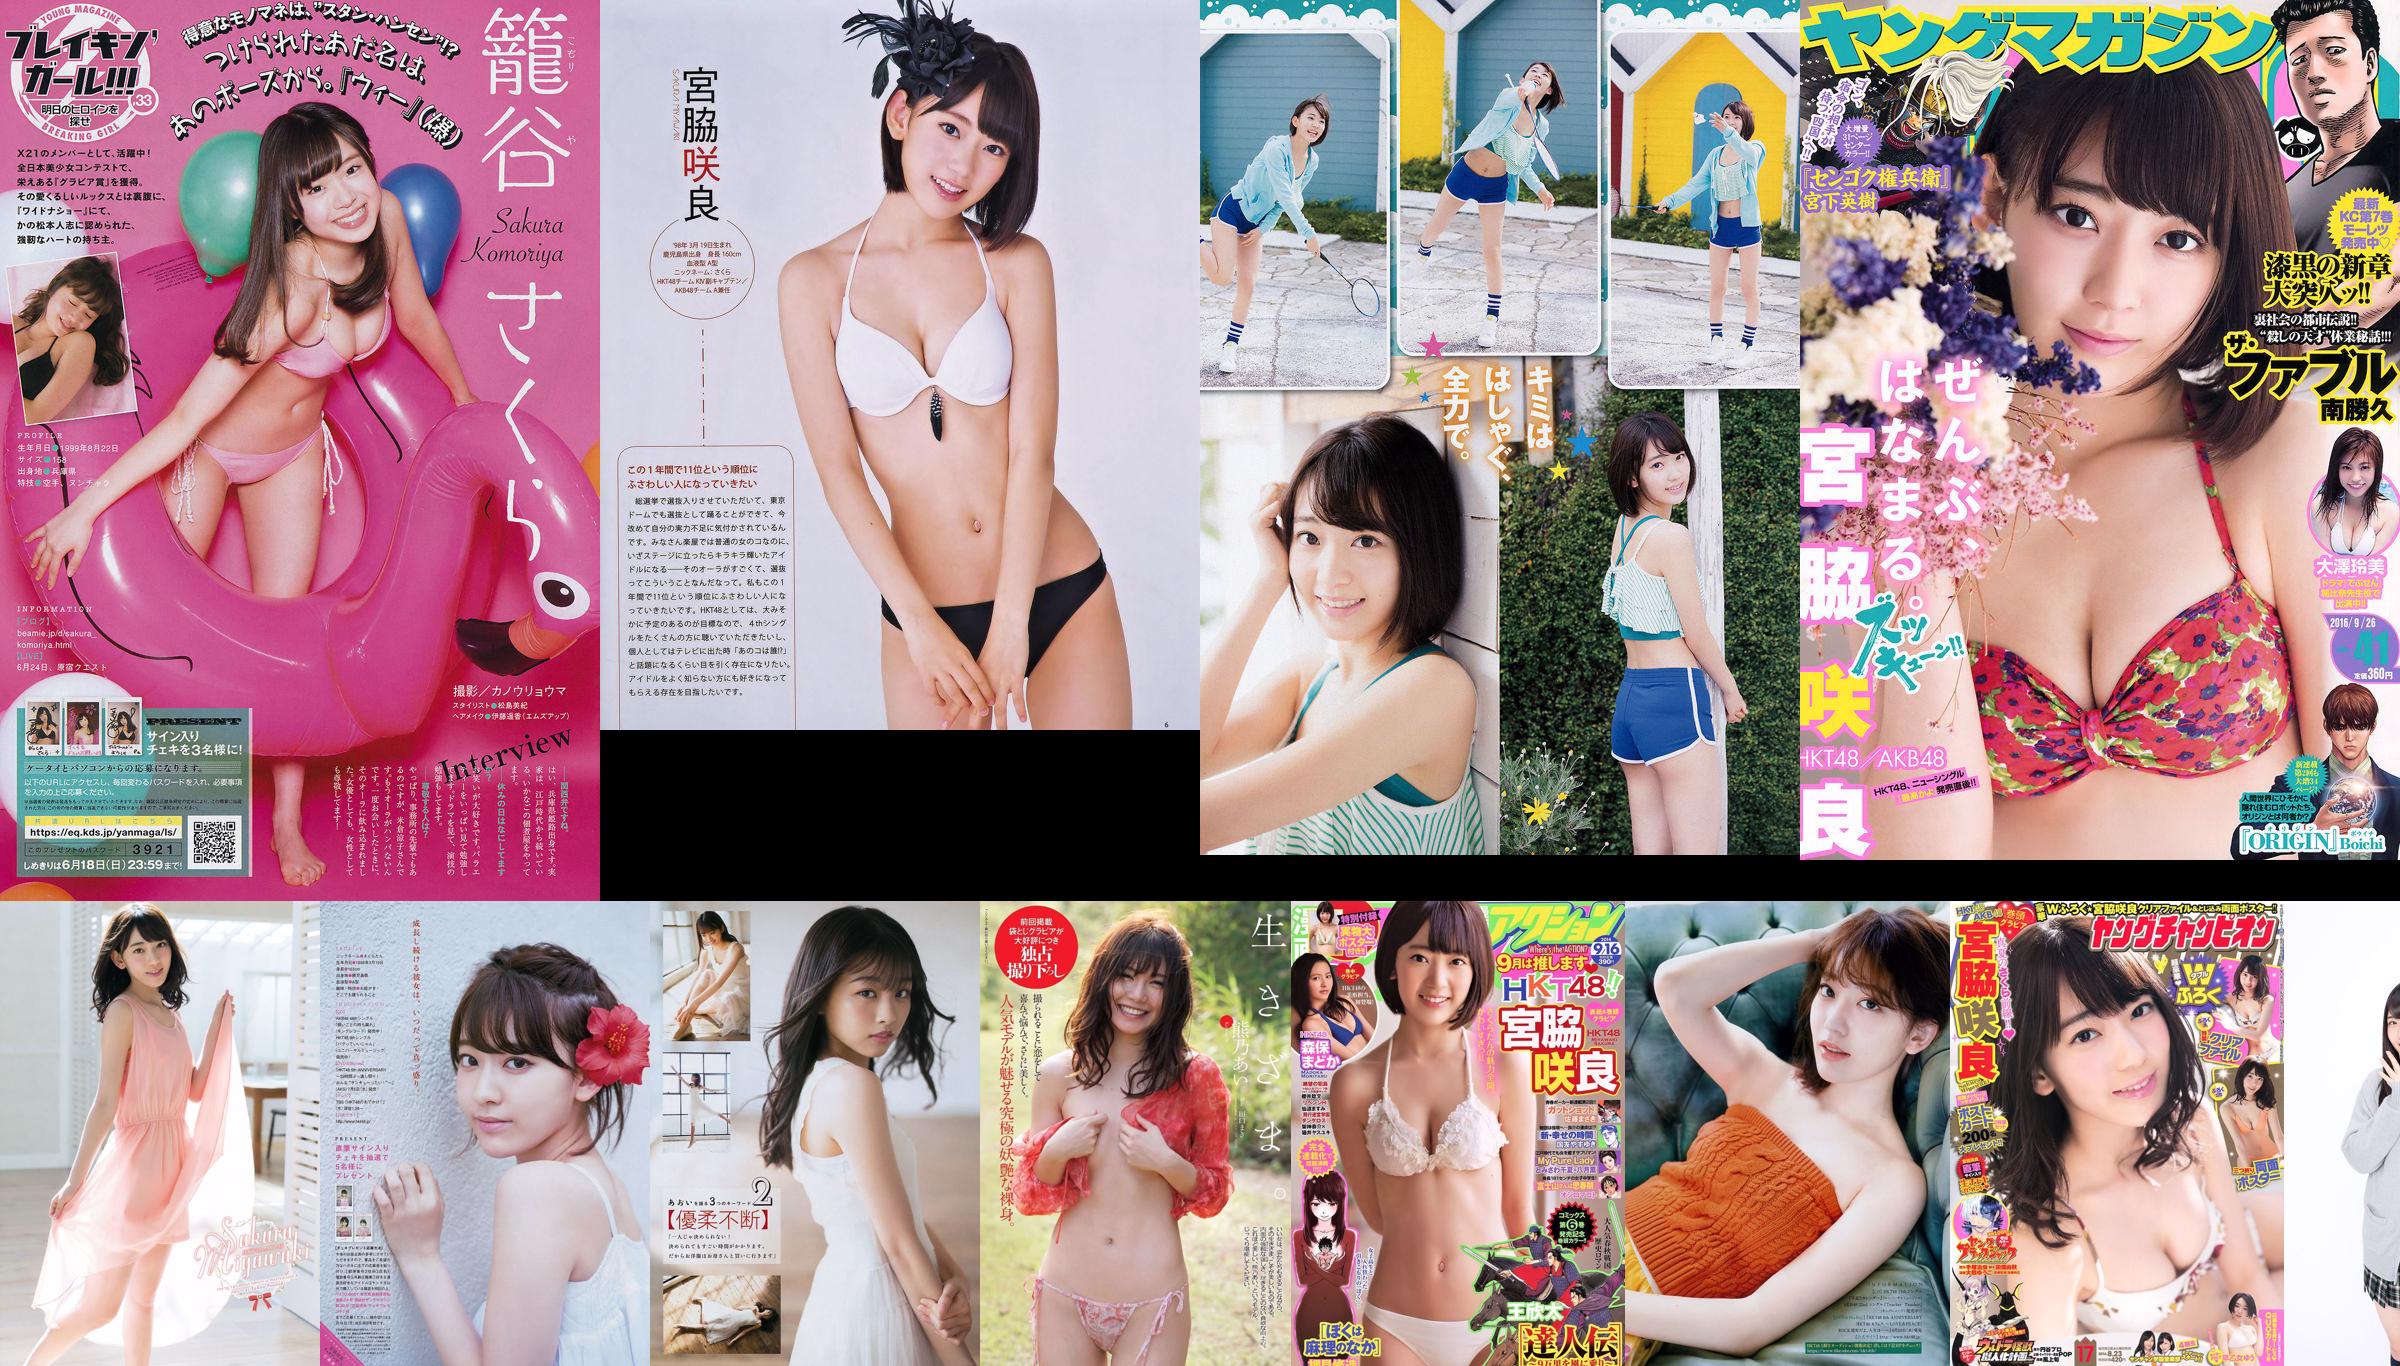 Sakura Miyawaki Ai Kumano Yurina Yanagi Chiyo Koma Eriko Mukaichi Mion Mukaichi SNH48 Kamen Joshi [Playboy semanal] 2015 No.22 Foto No.768dc4 Página 4